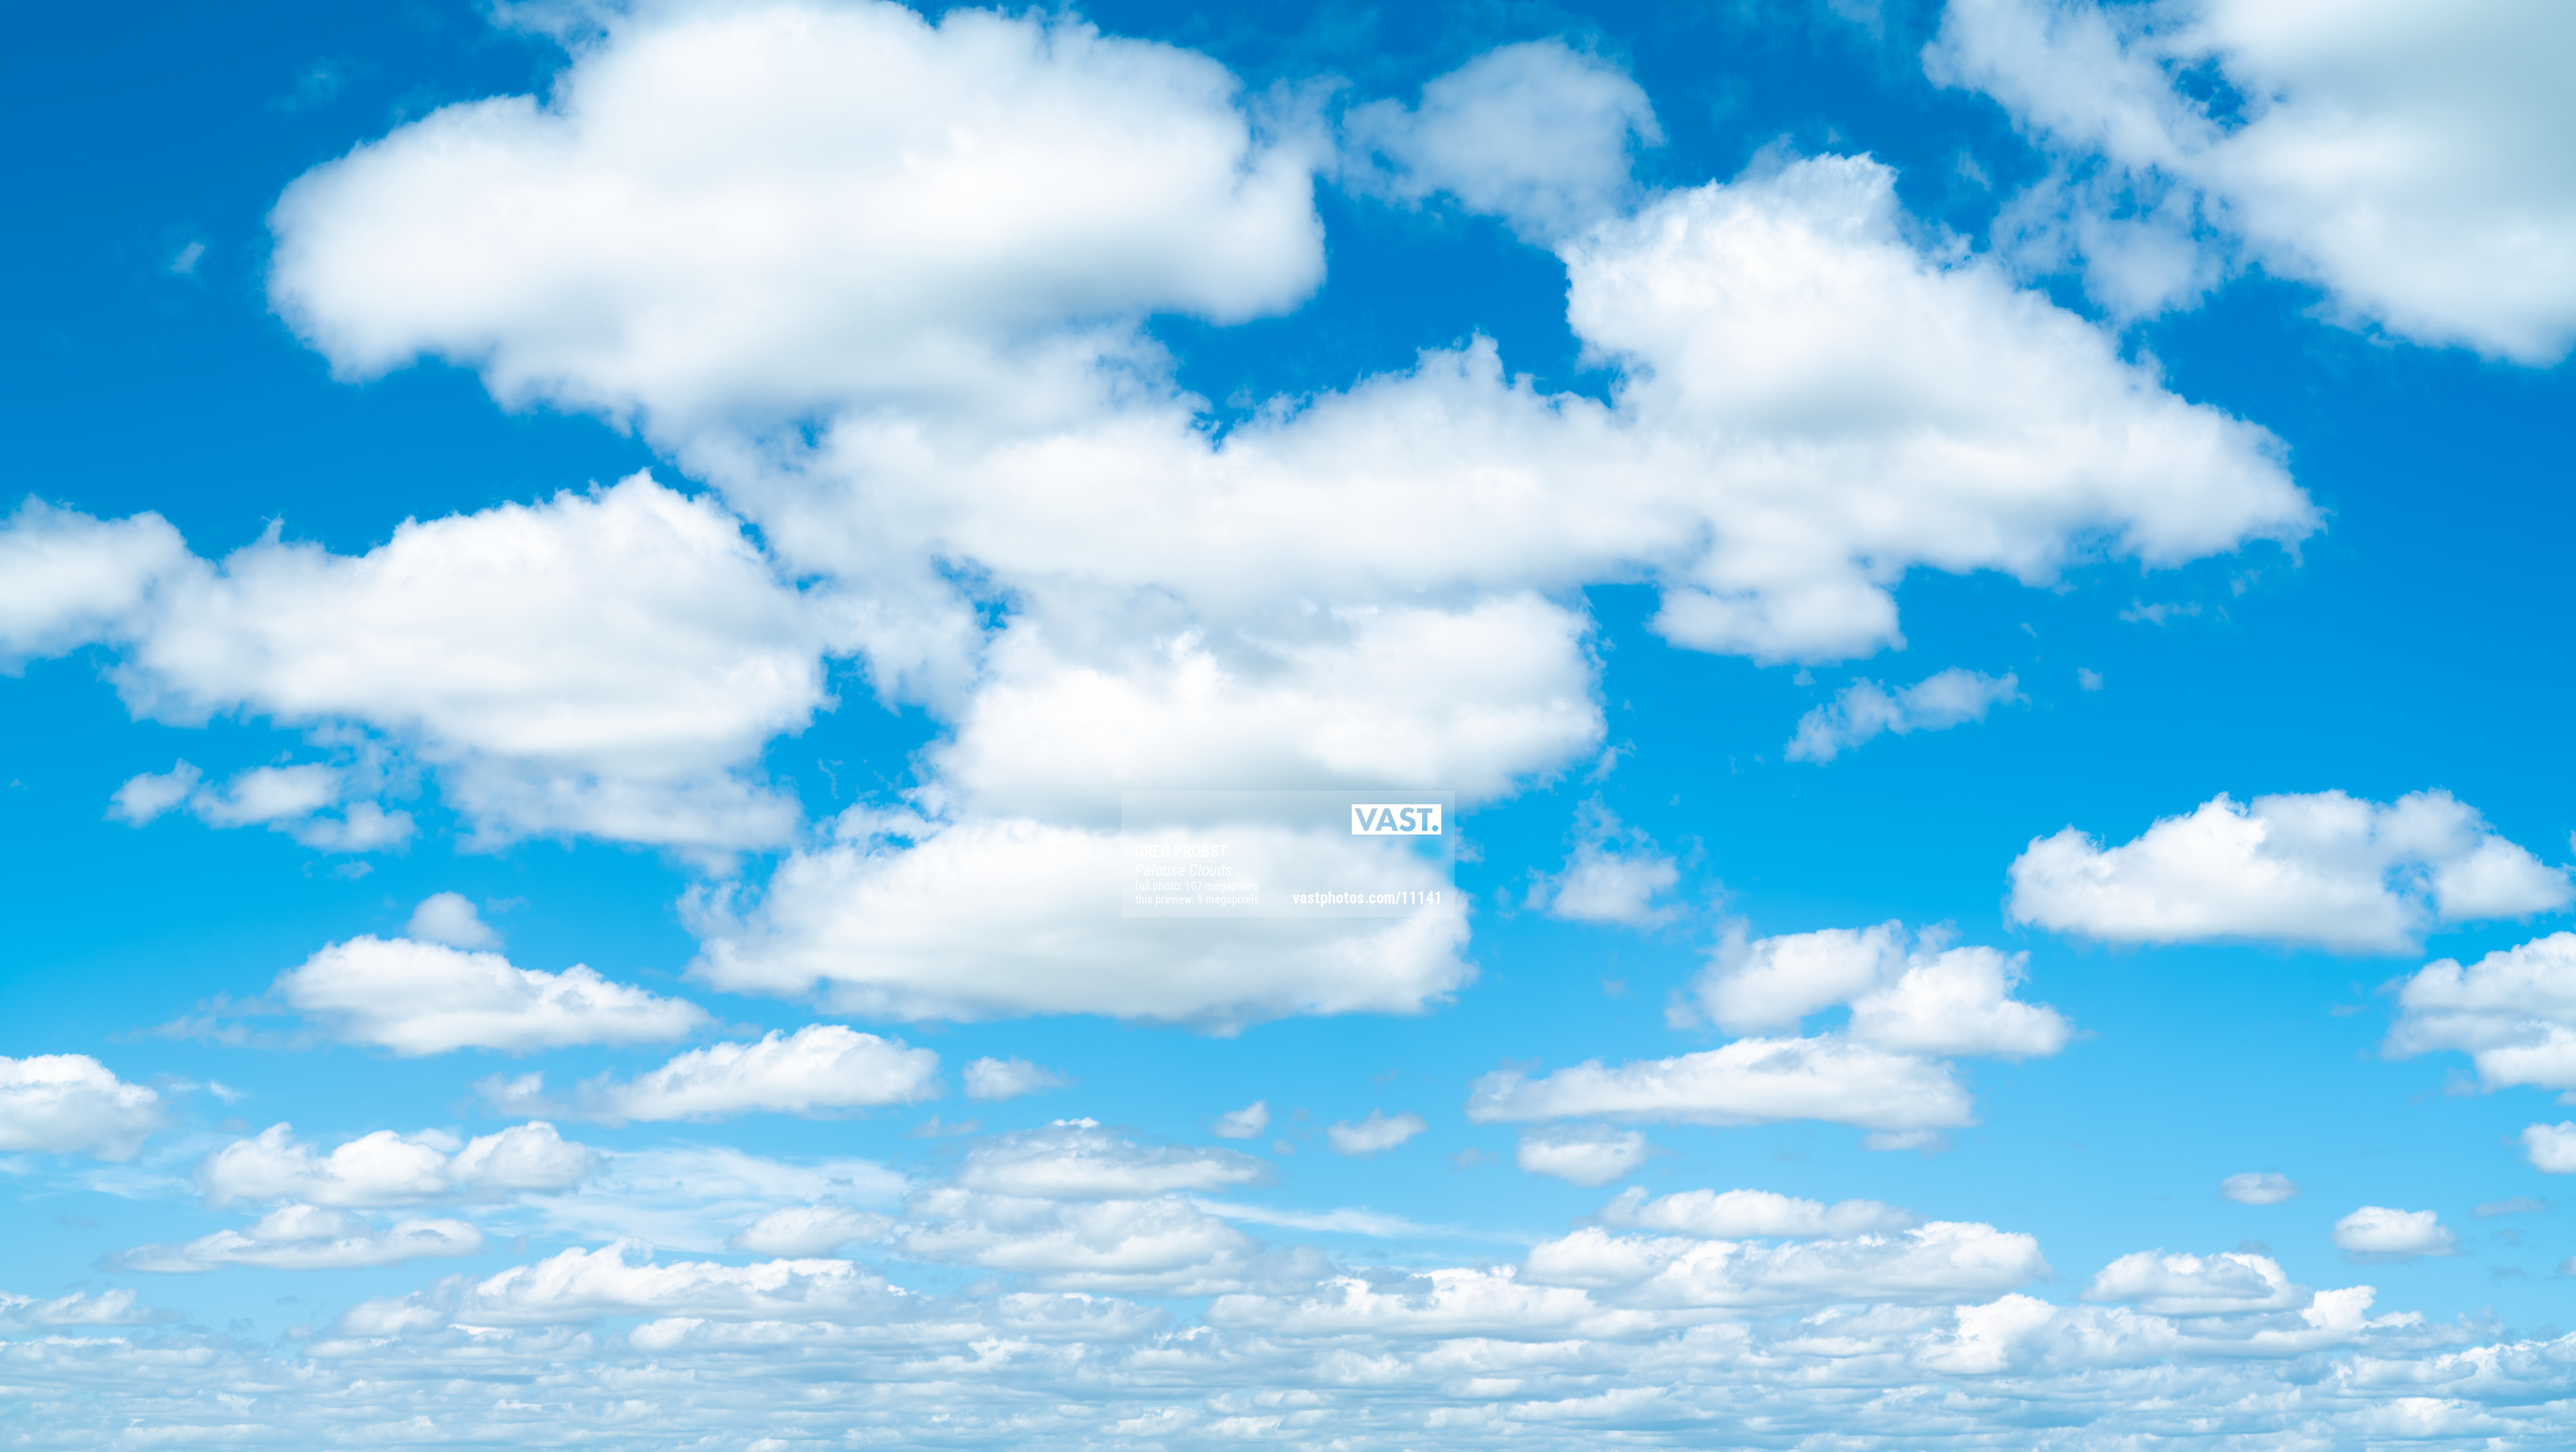 Fluffy White Clouds In A Blue Sky by Emrah Turudu